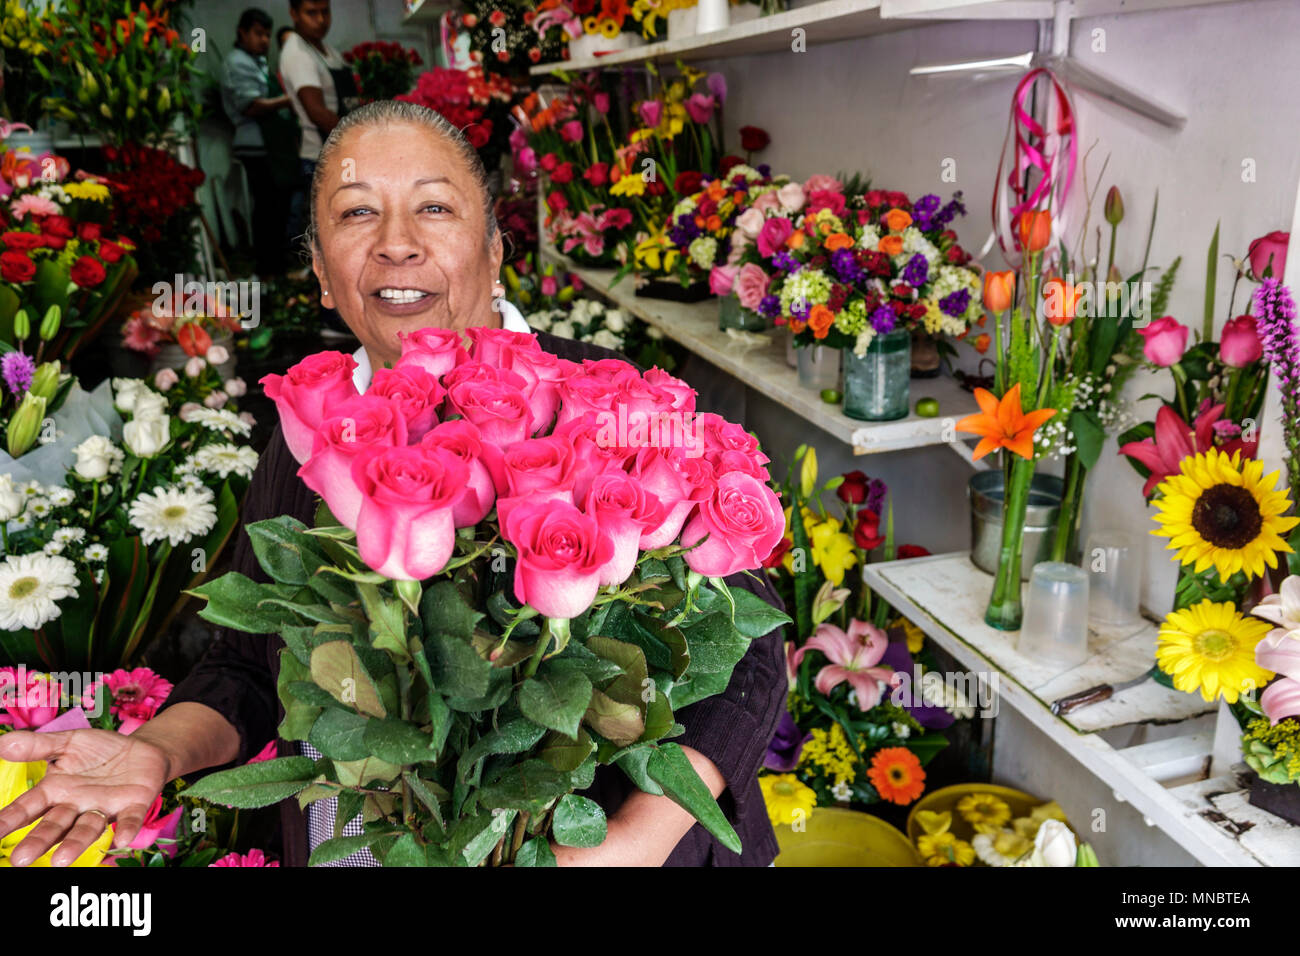 Mexico City,Hispanic ethnic Alvaro Obregon San Angel,flower market Mercado de Flores,florist,bouquet,floral arrangement,vendor vendors sell selling,st Stock Photo